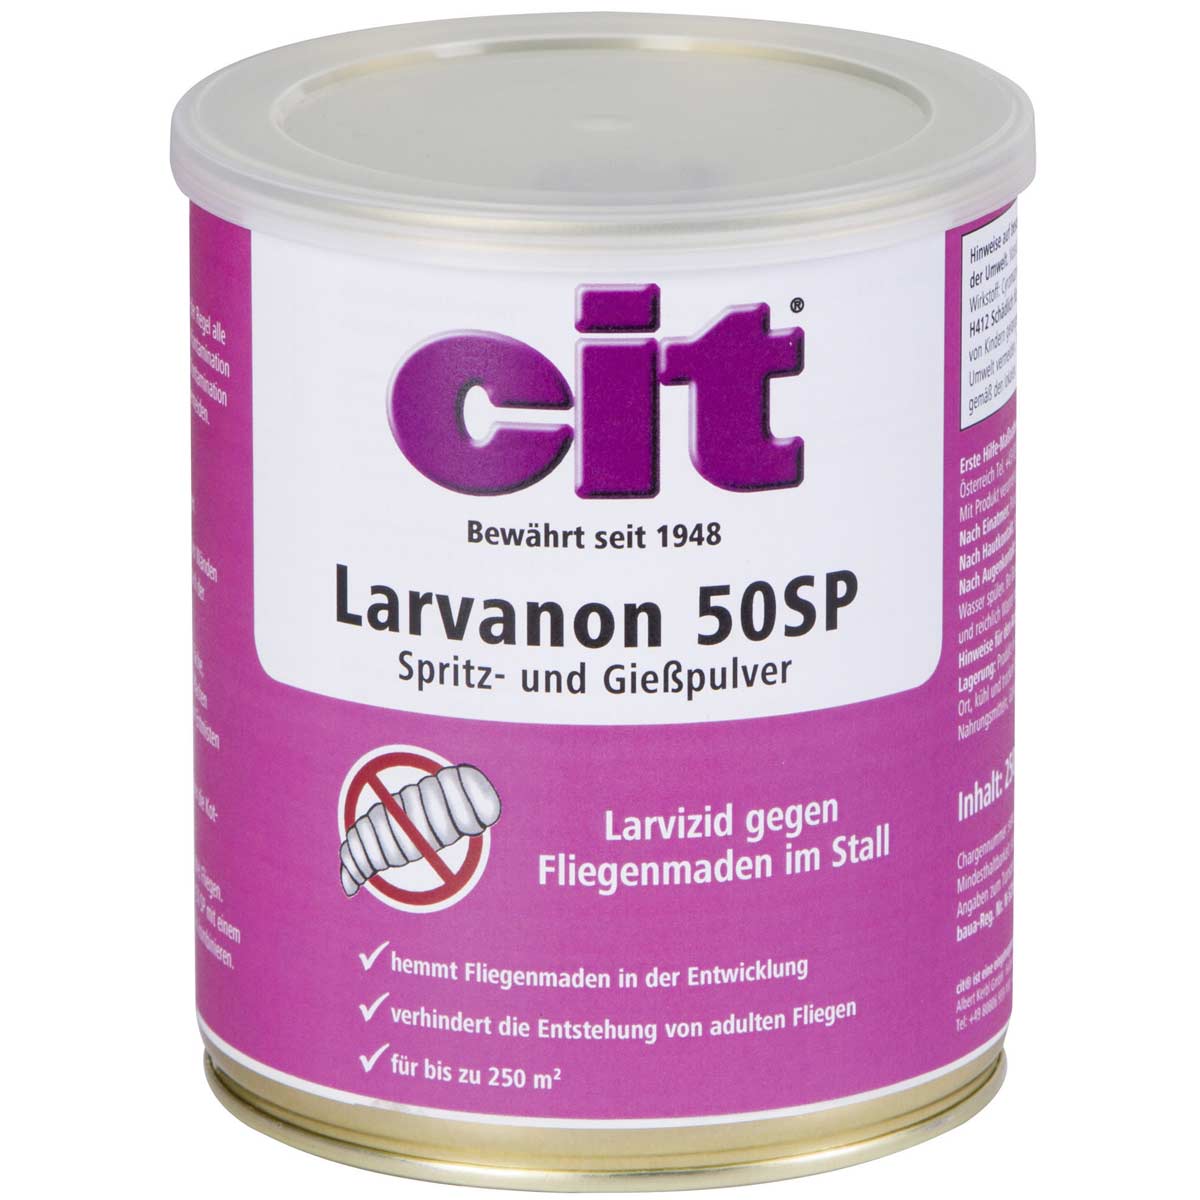 Cit Larvizid Larvanon Spritzpulver 50 SP 250 g